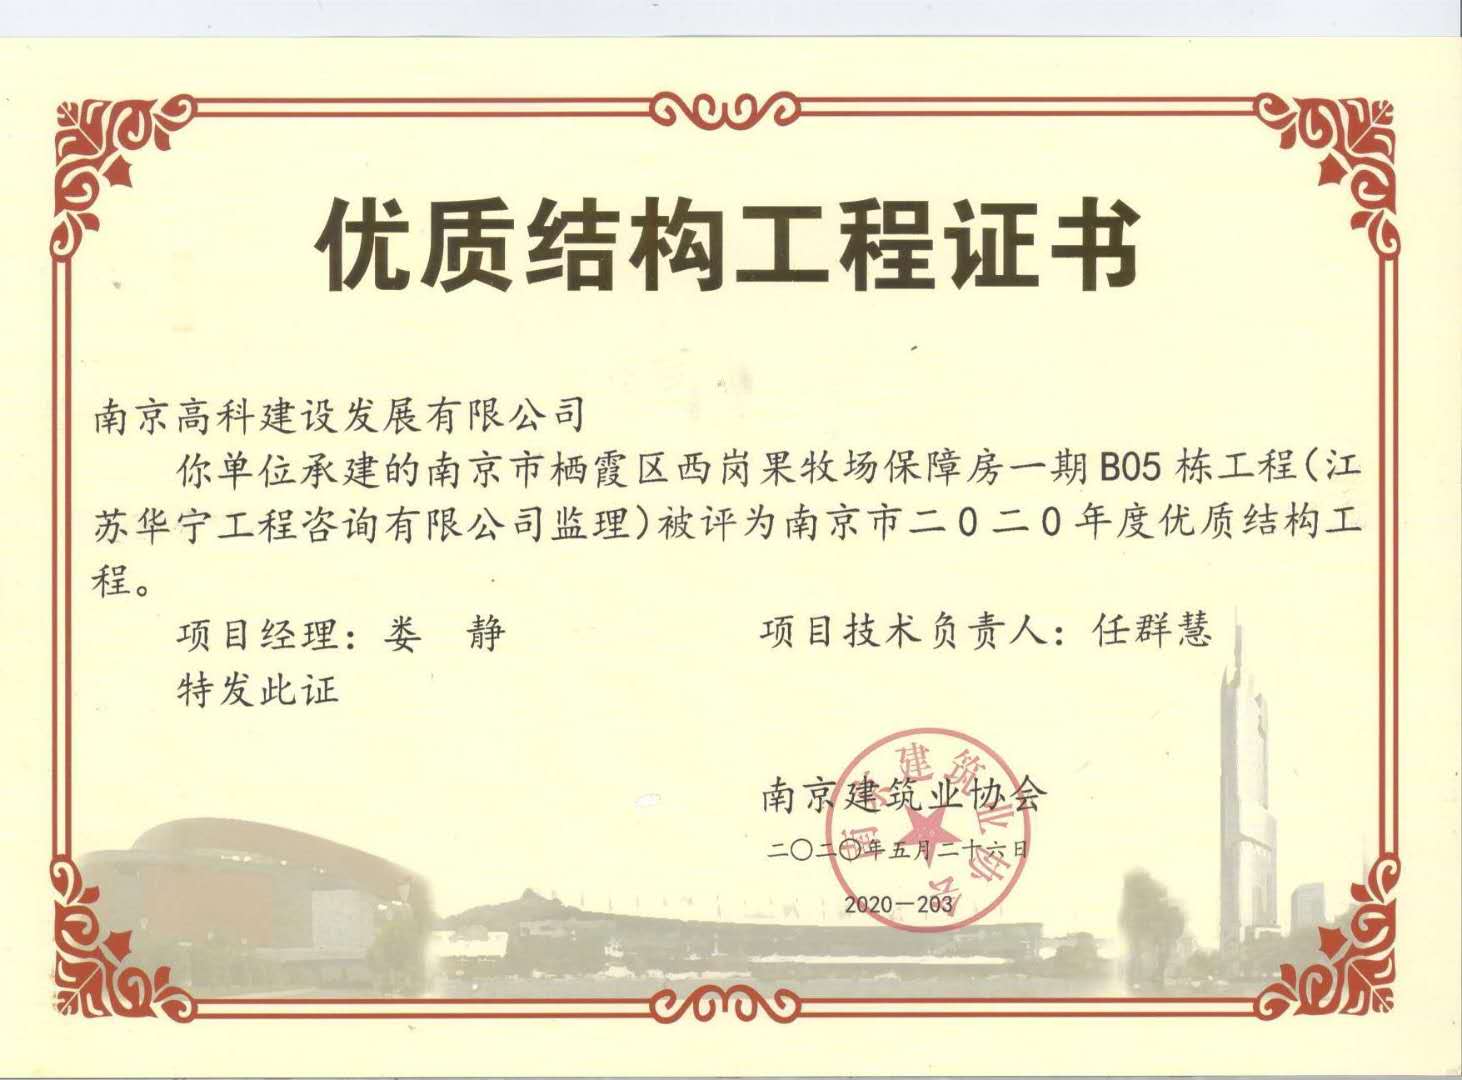 2020年度南京市优质结构工程（南京市栖霞区西岗果牧场保障房一期B05栋工程）